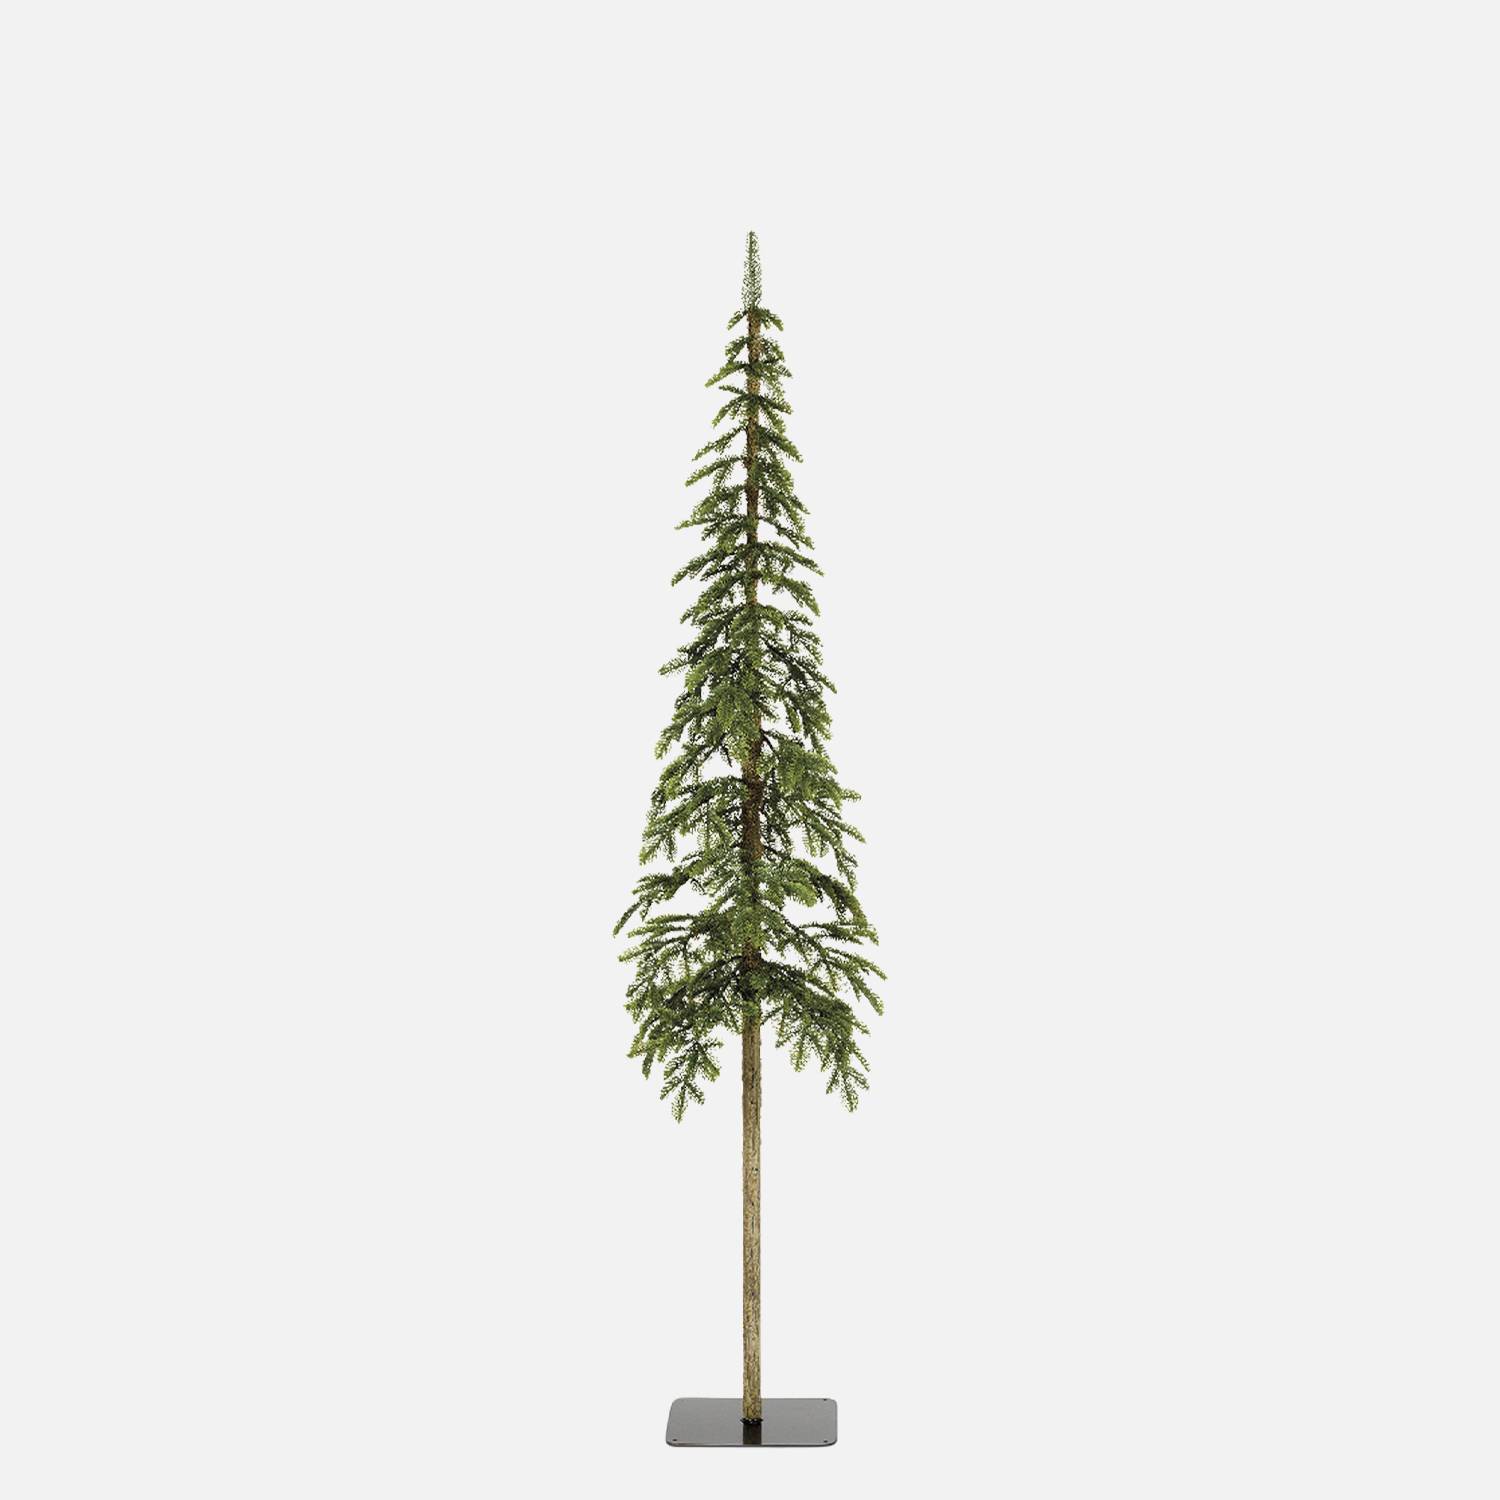 Kunstboom 180cm, dun, kegelvormige top - Alberta - lange rechte stam, realistische uitstraling, inclusief voet Photo1